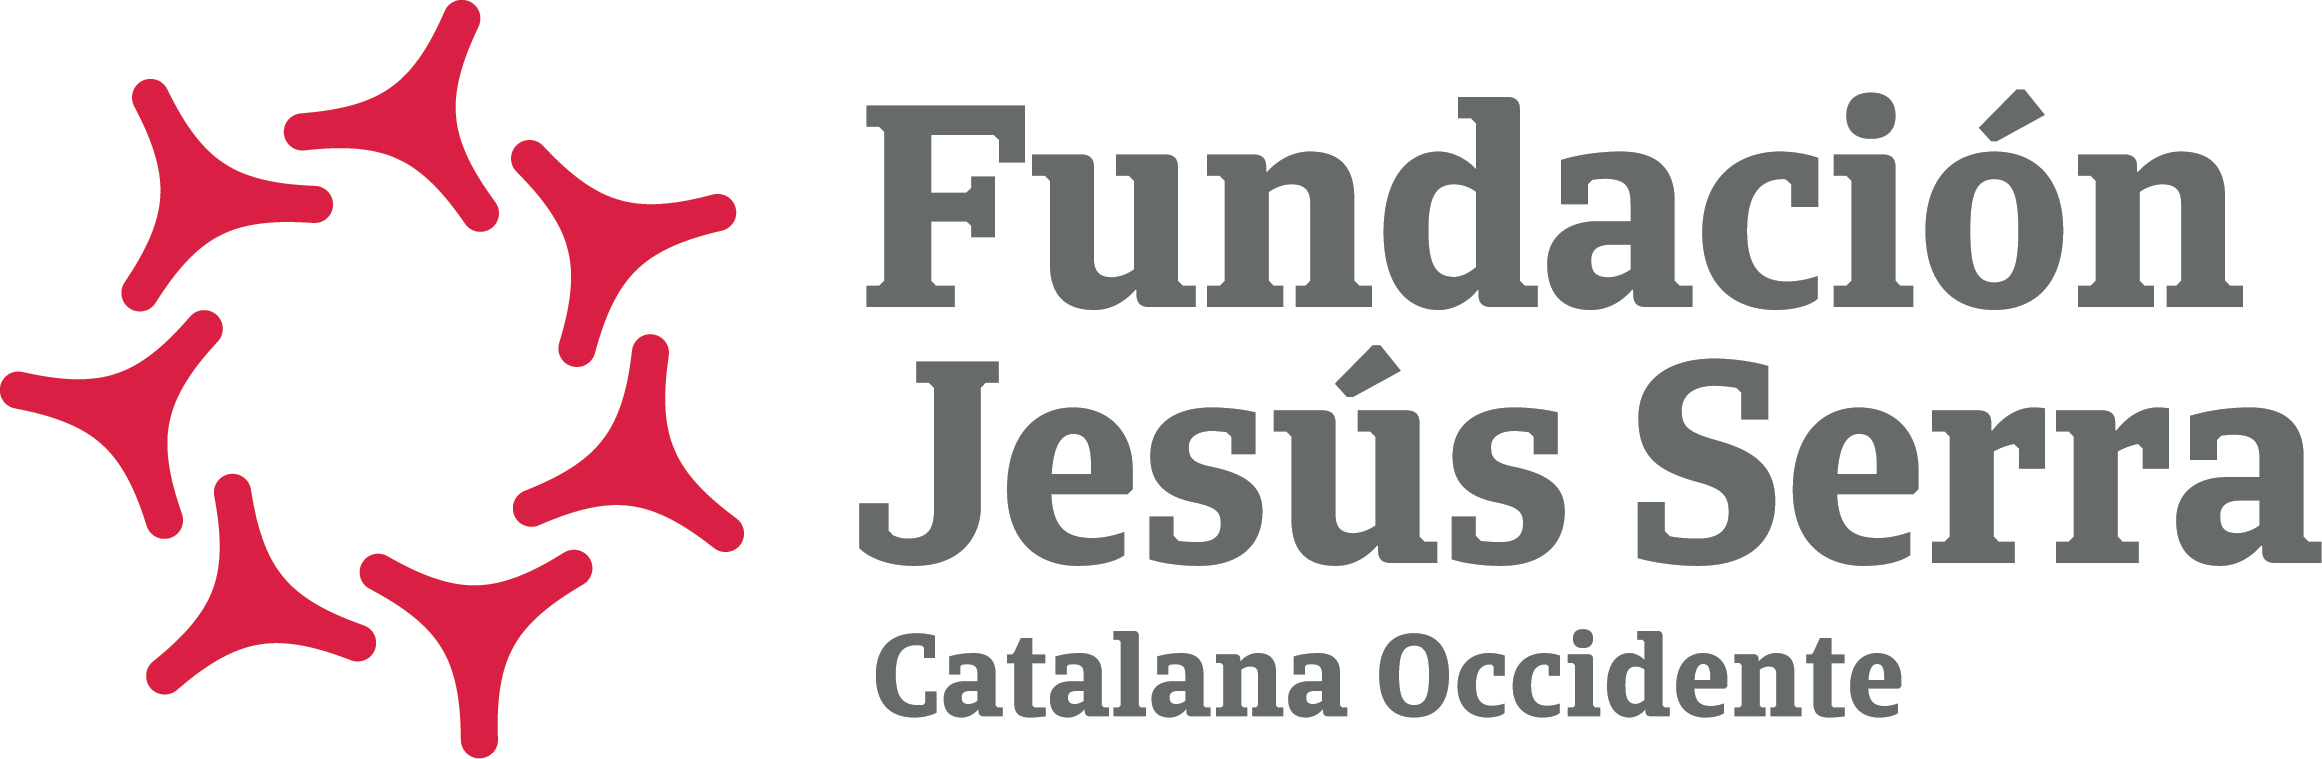 catalana occidente logo fundacion jesus serra cas